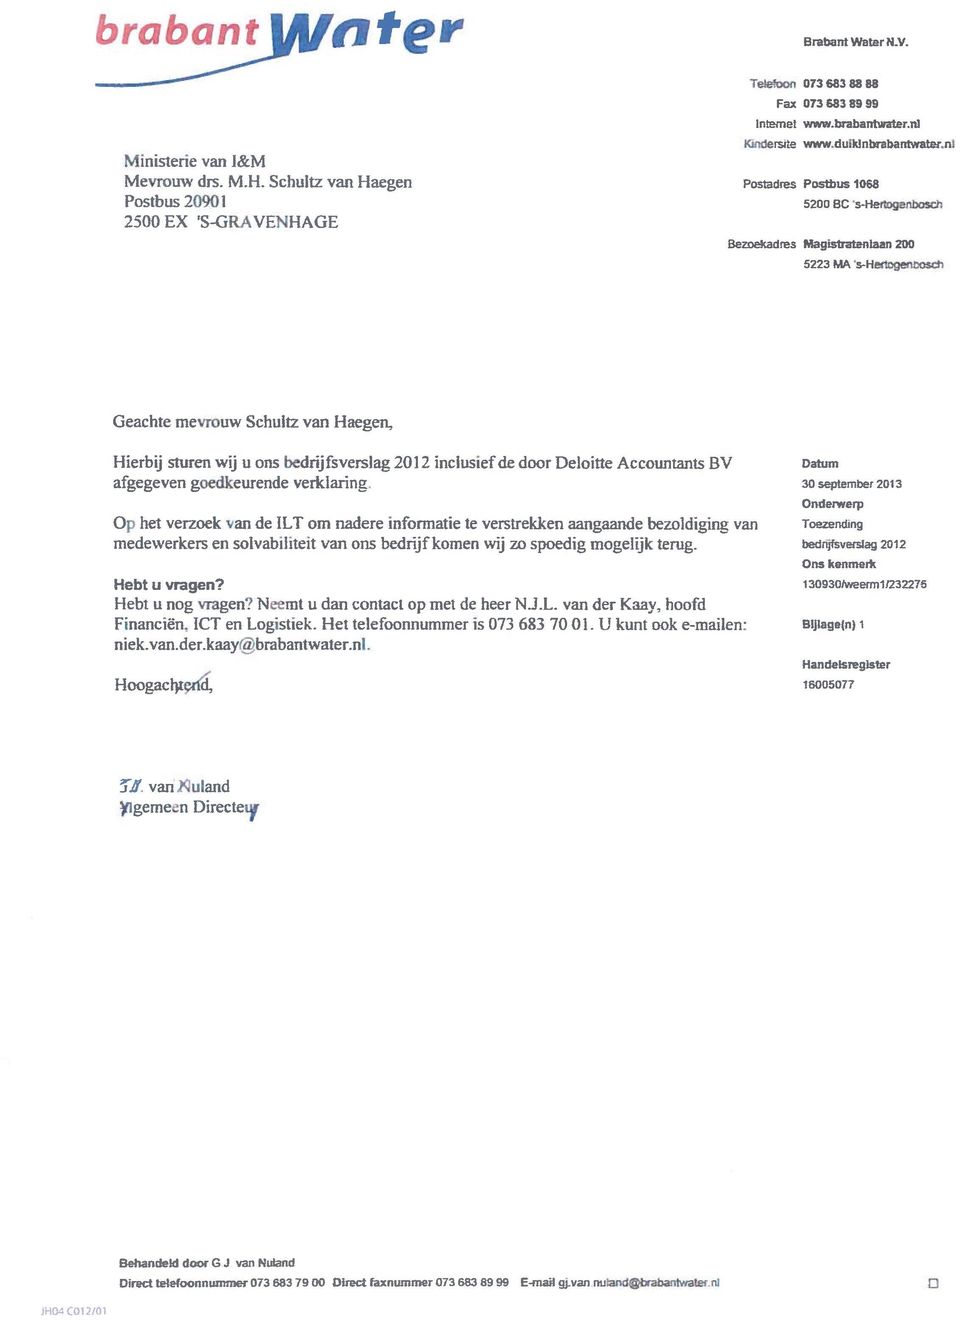 Geache mevrouw Schulz van Haegen, Hierbij suren wij u ons bedrijfsverslag 2012 inclusief de door Deloie Accounans BV afgegeven goedkeurende verklaring.